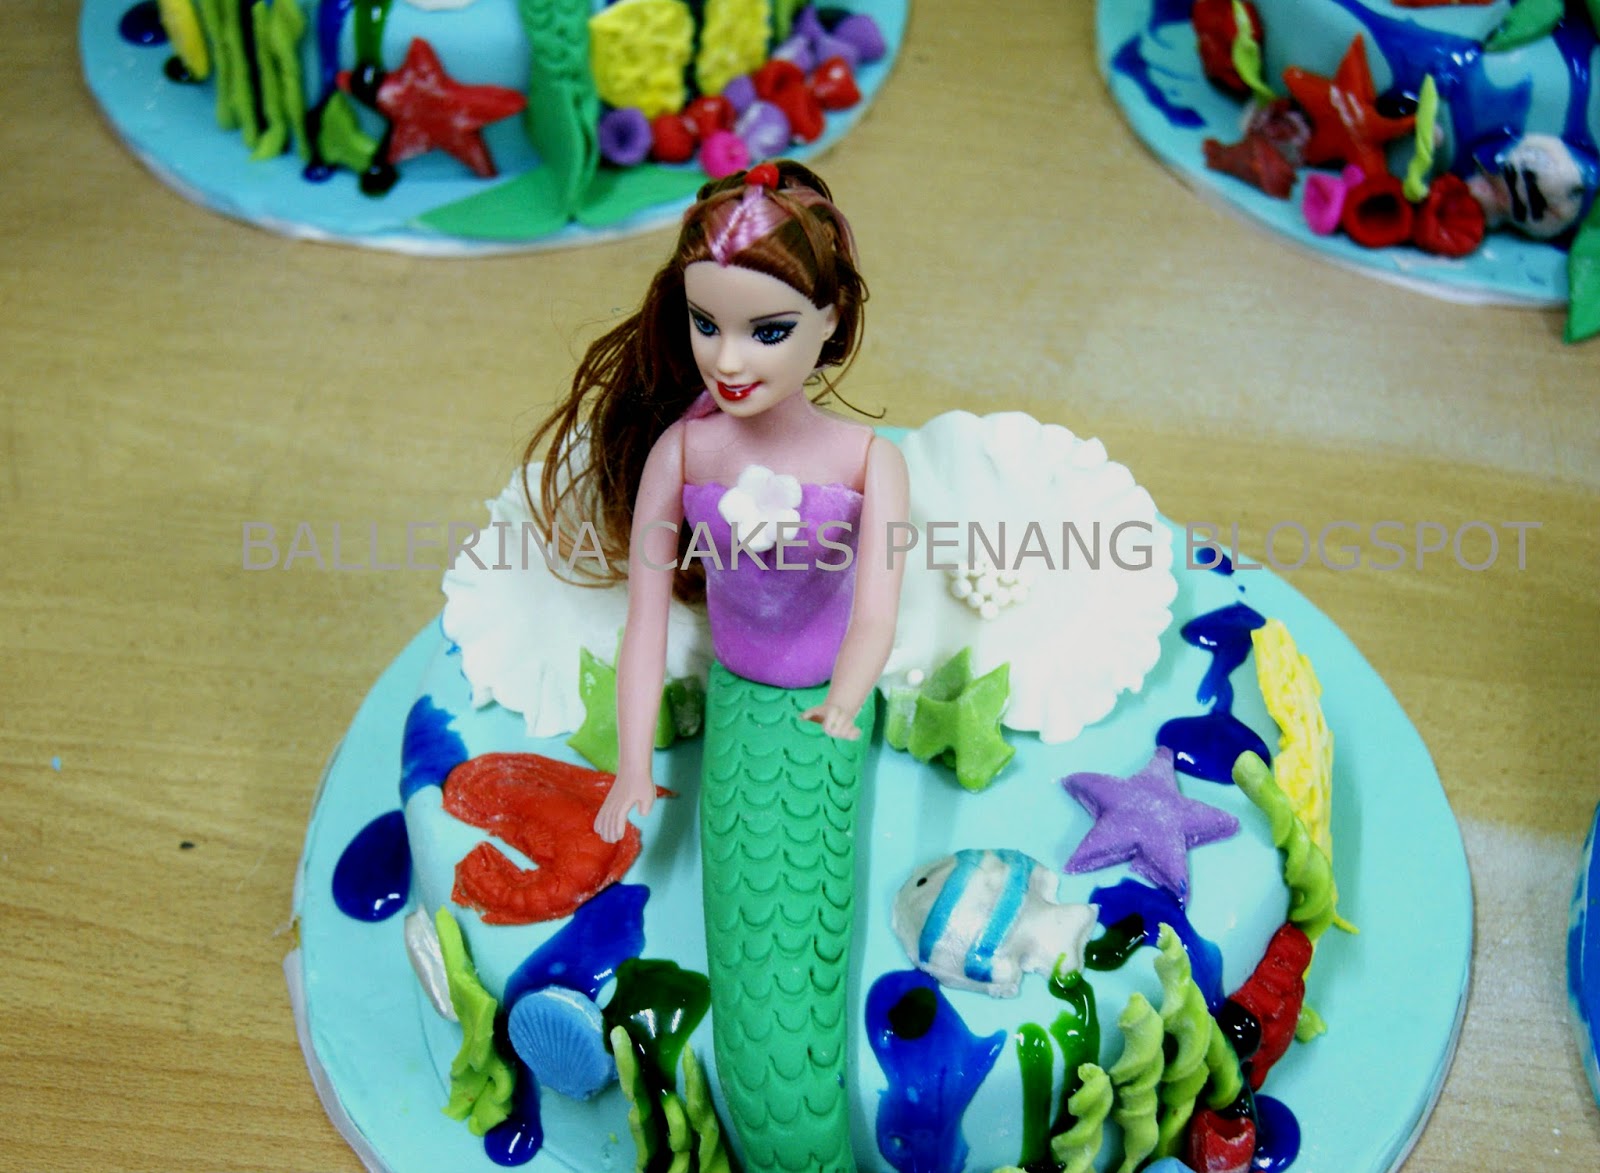 BALLERINA CAKES PENANG Kelas  Dekorasi  Kek Fondan Mermaid 2019